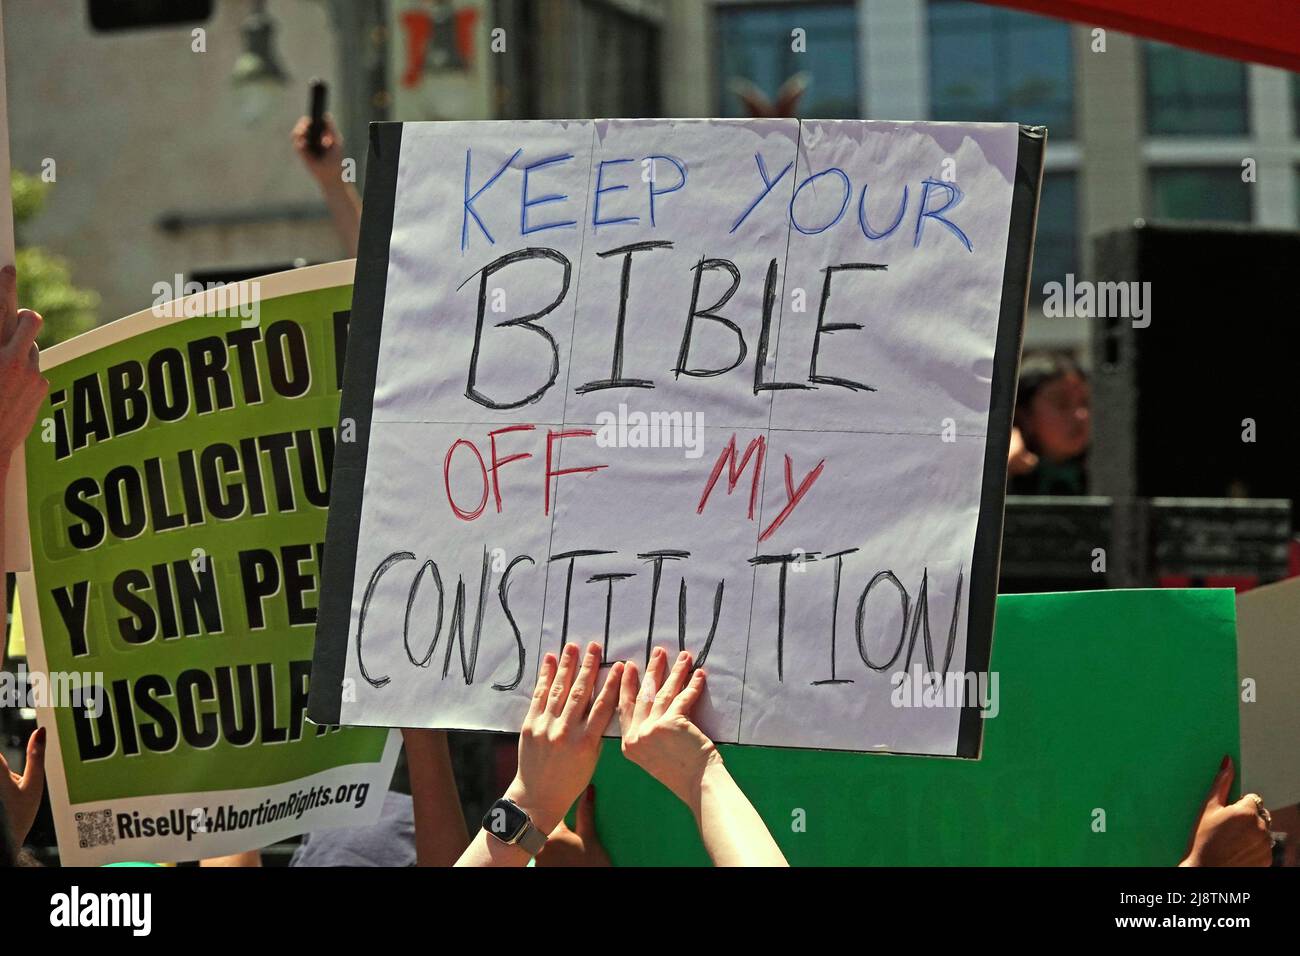 Los Angeles, CA / USA - 14. Mai 2022: Auf einem Schild steht: „KEEP YOUR BIBLE OFF MY CONSTITUTION“ bei einem marsch zur Unterstützung der reproduktiven Rechte von Frauen. Stockfoto